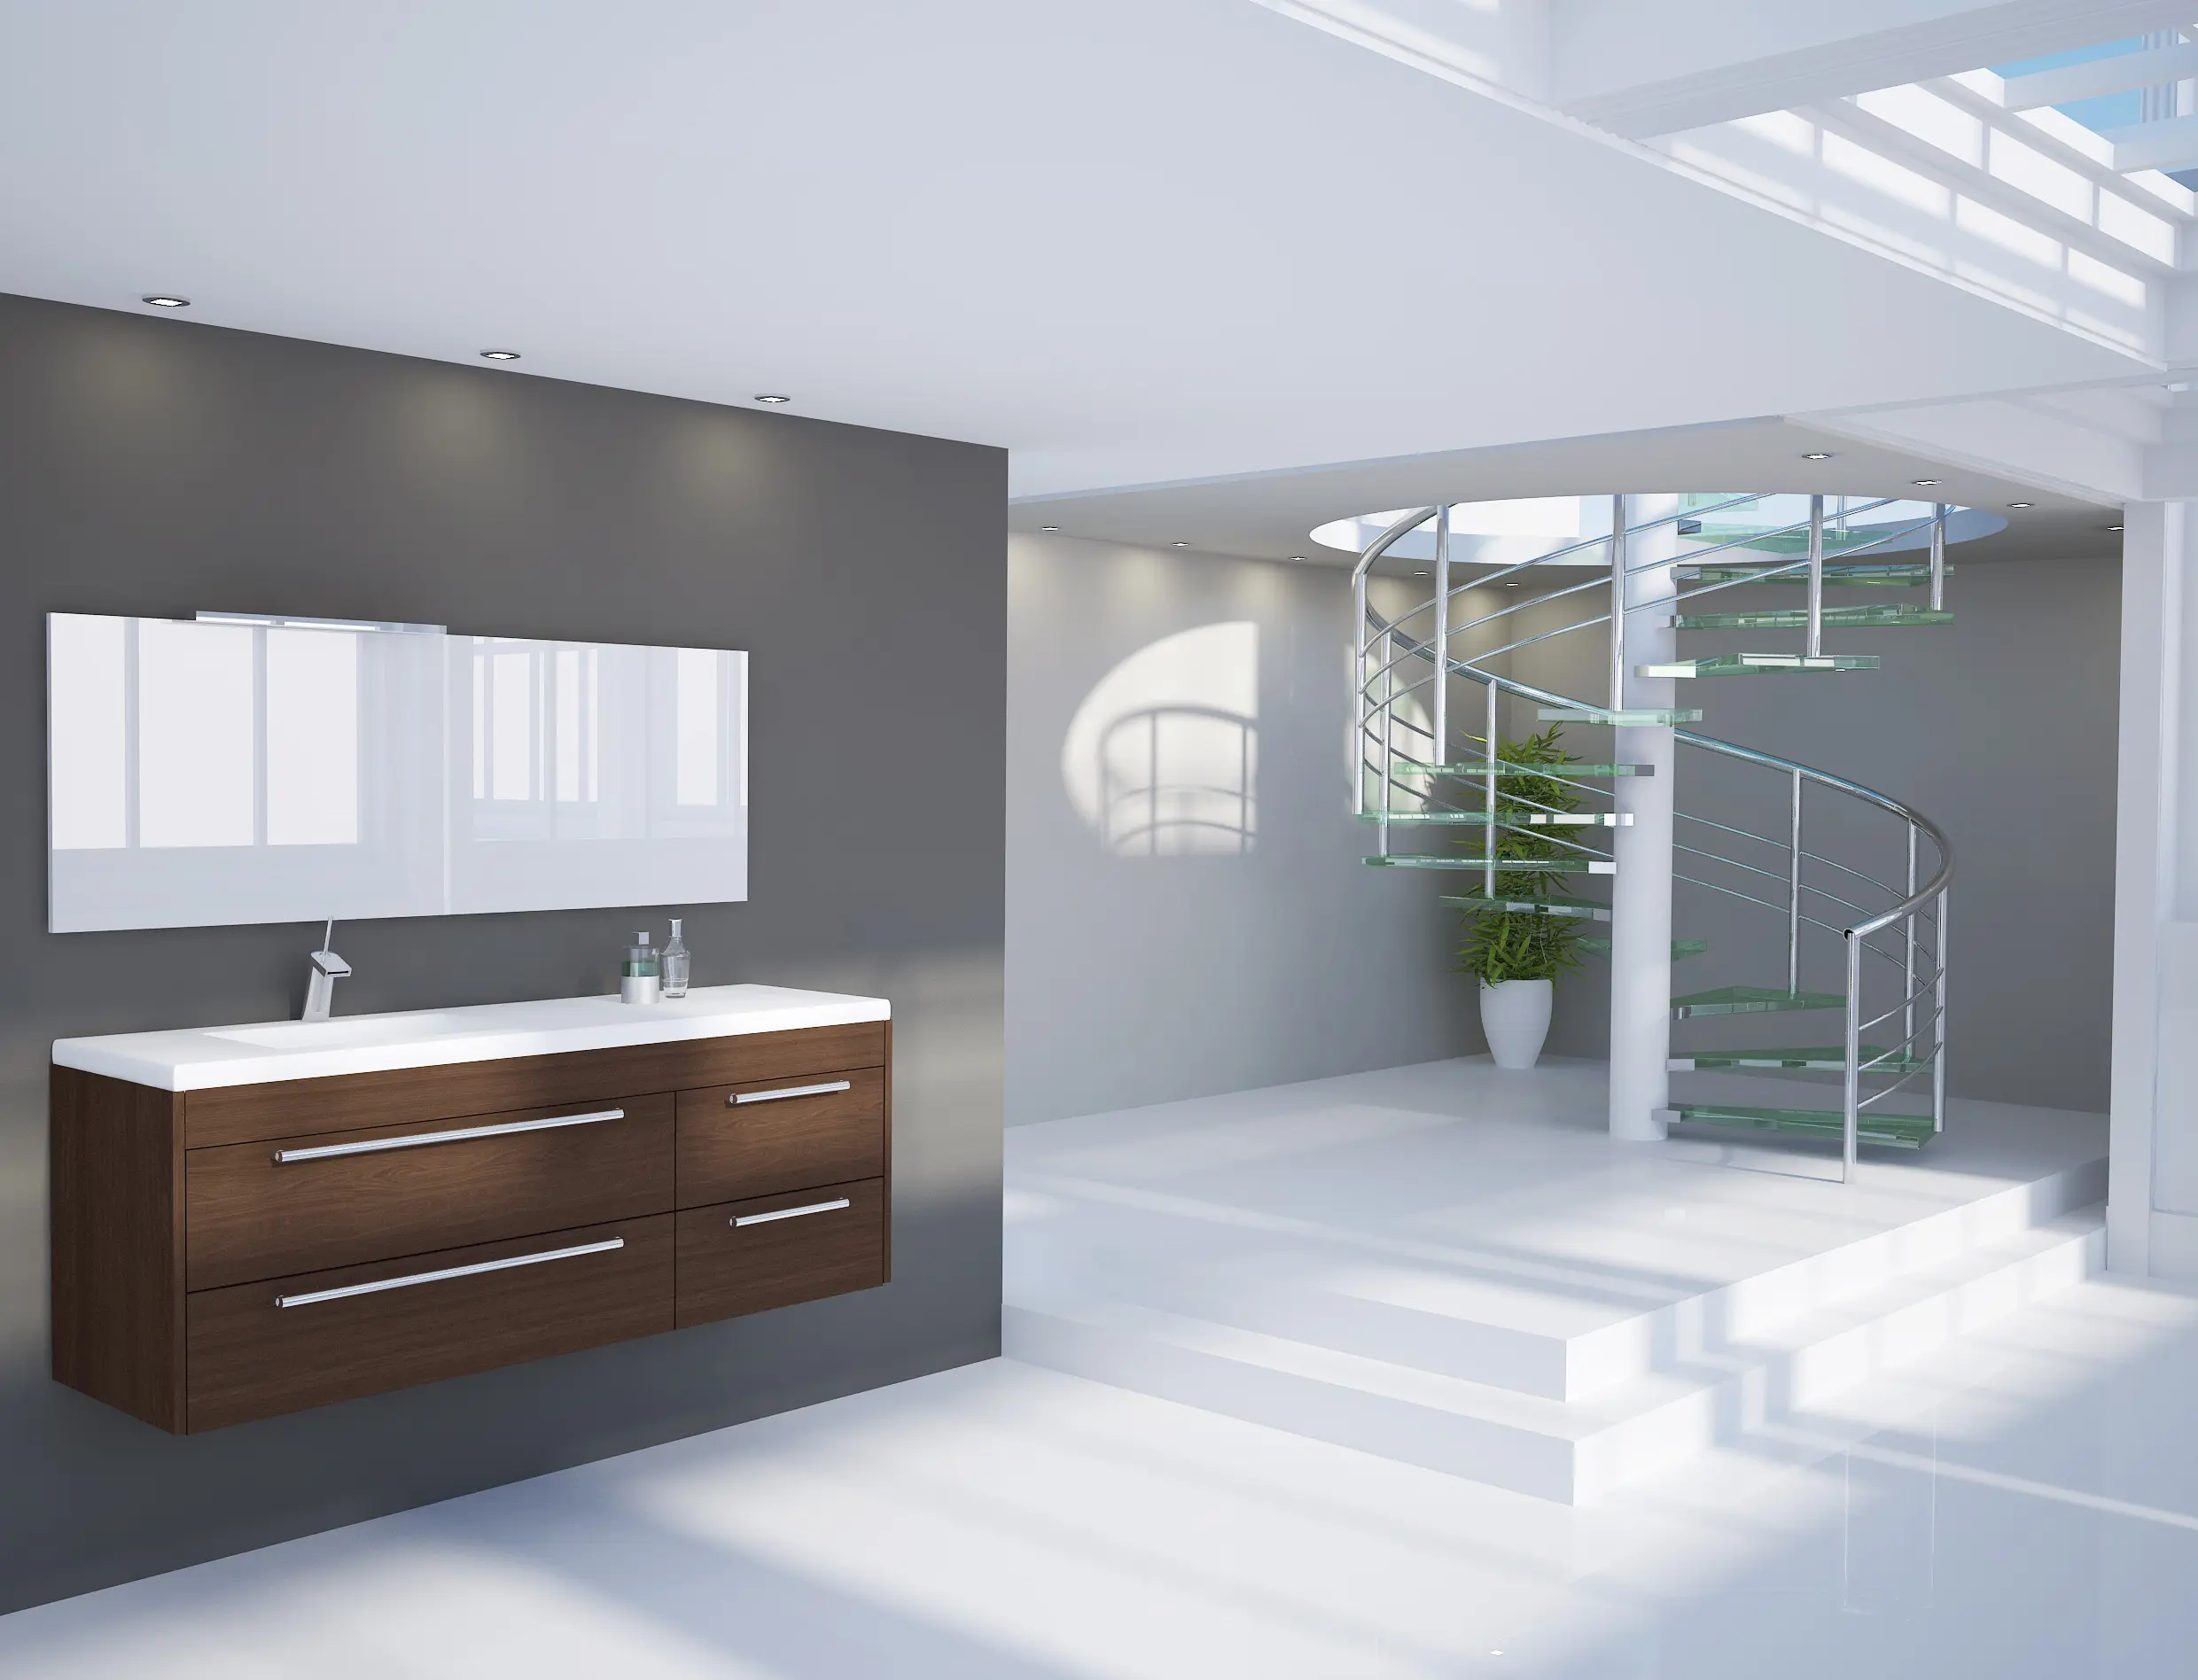 Imagen de un cuarto de baño moderno pintado en tonos blanco y gris muy amplio y luminoso